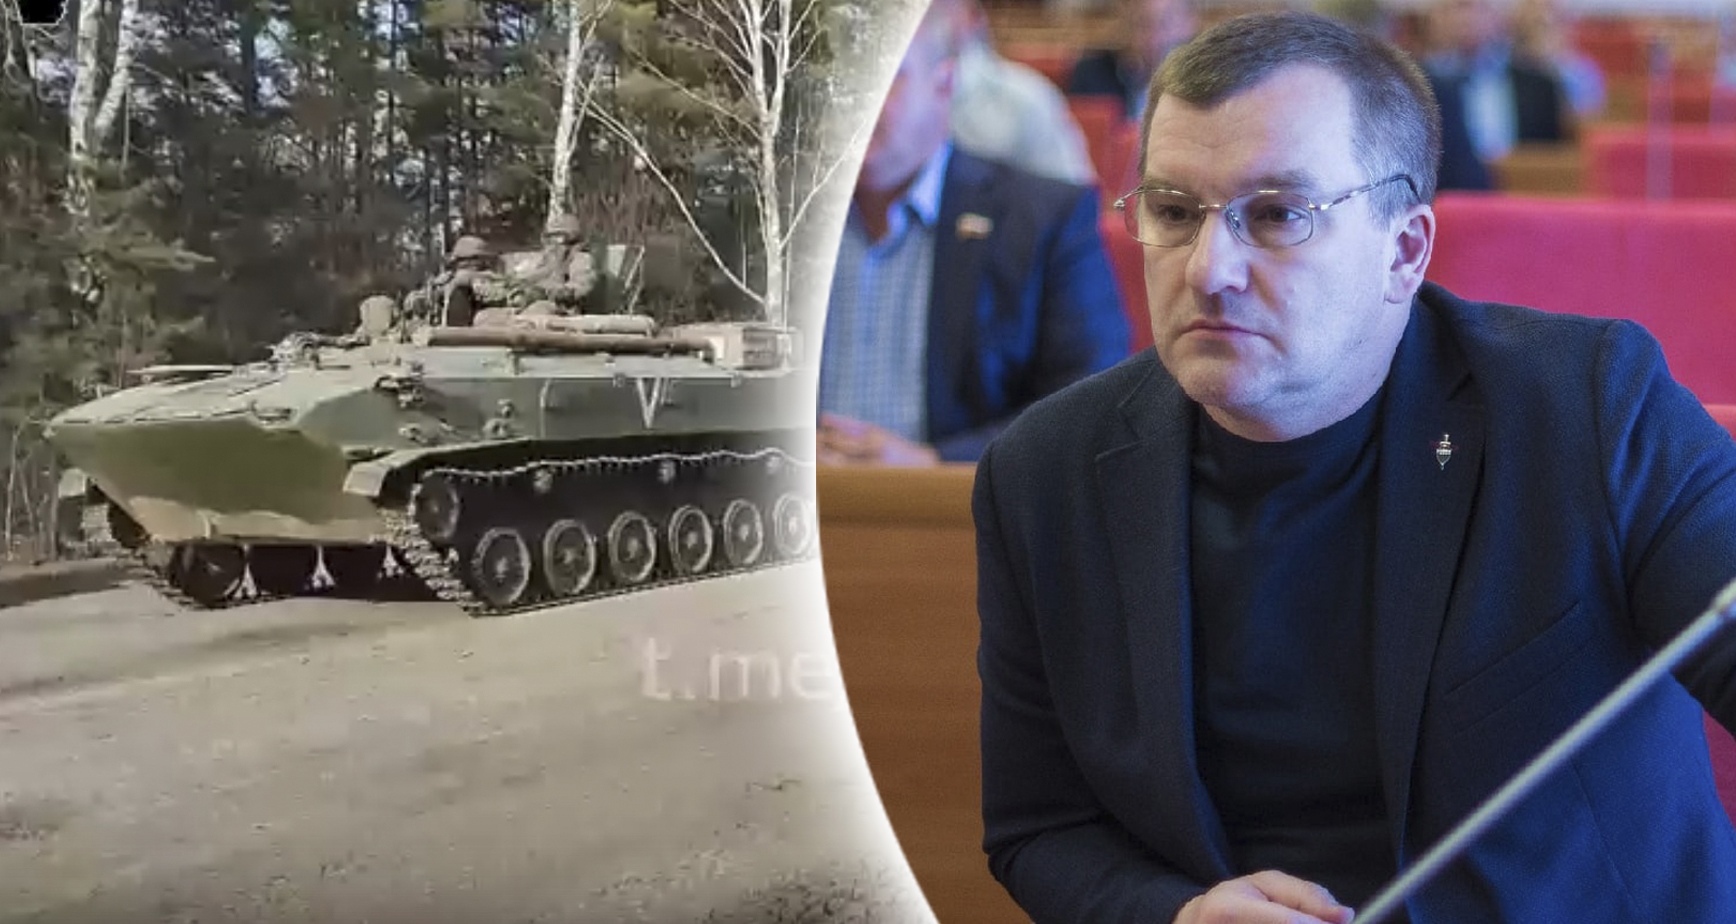 "Автоматы НАТО достреливали бы до нашей трассы": ветеран СОБР о подноготной спецоперации